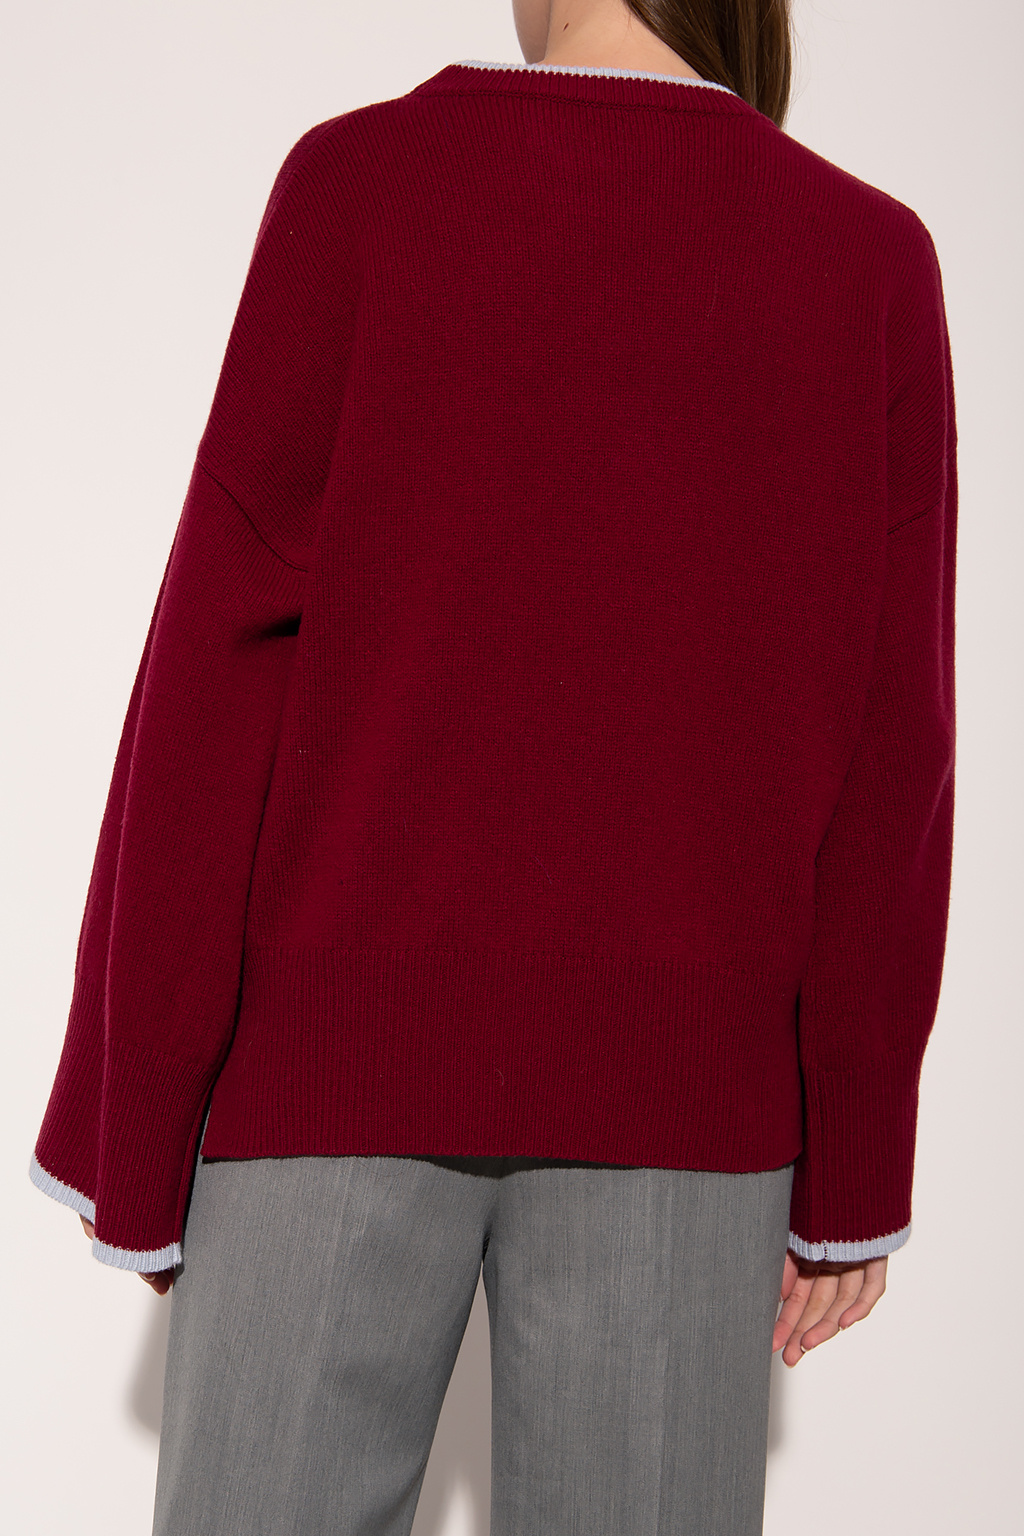 marni Rosa Wool sweater